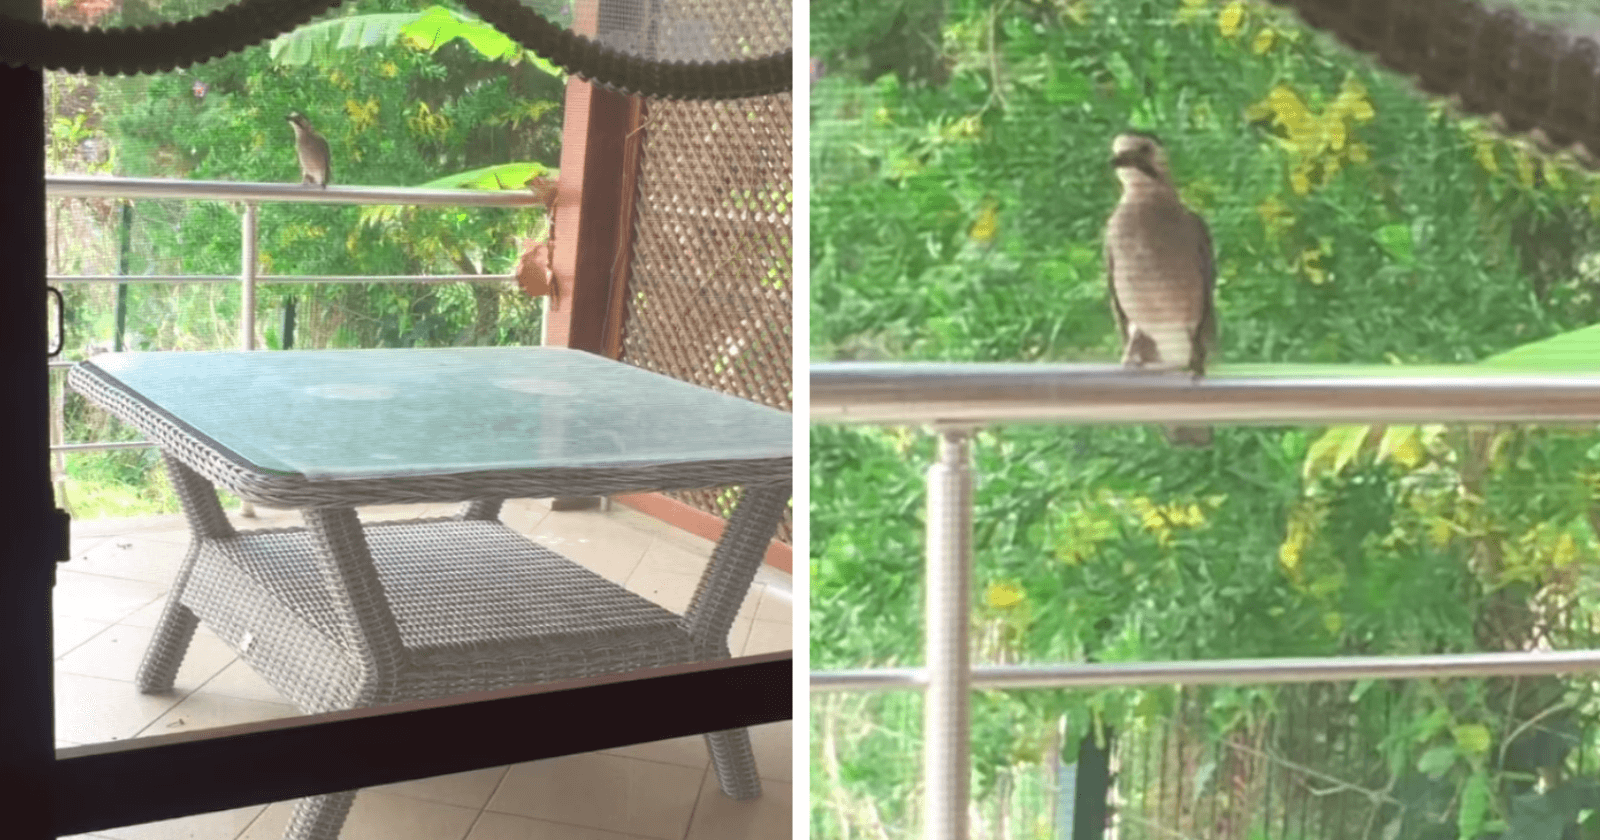 Ao ver uma mulher alimentar gatinhos, corvo aprende a miar para lhe pedir comida